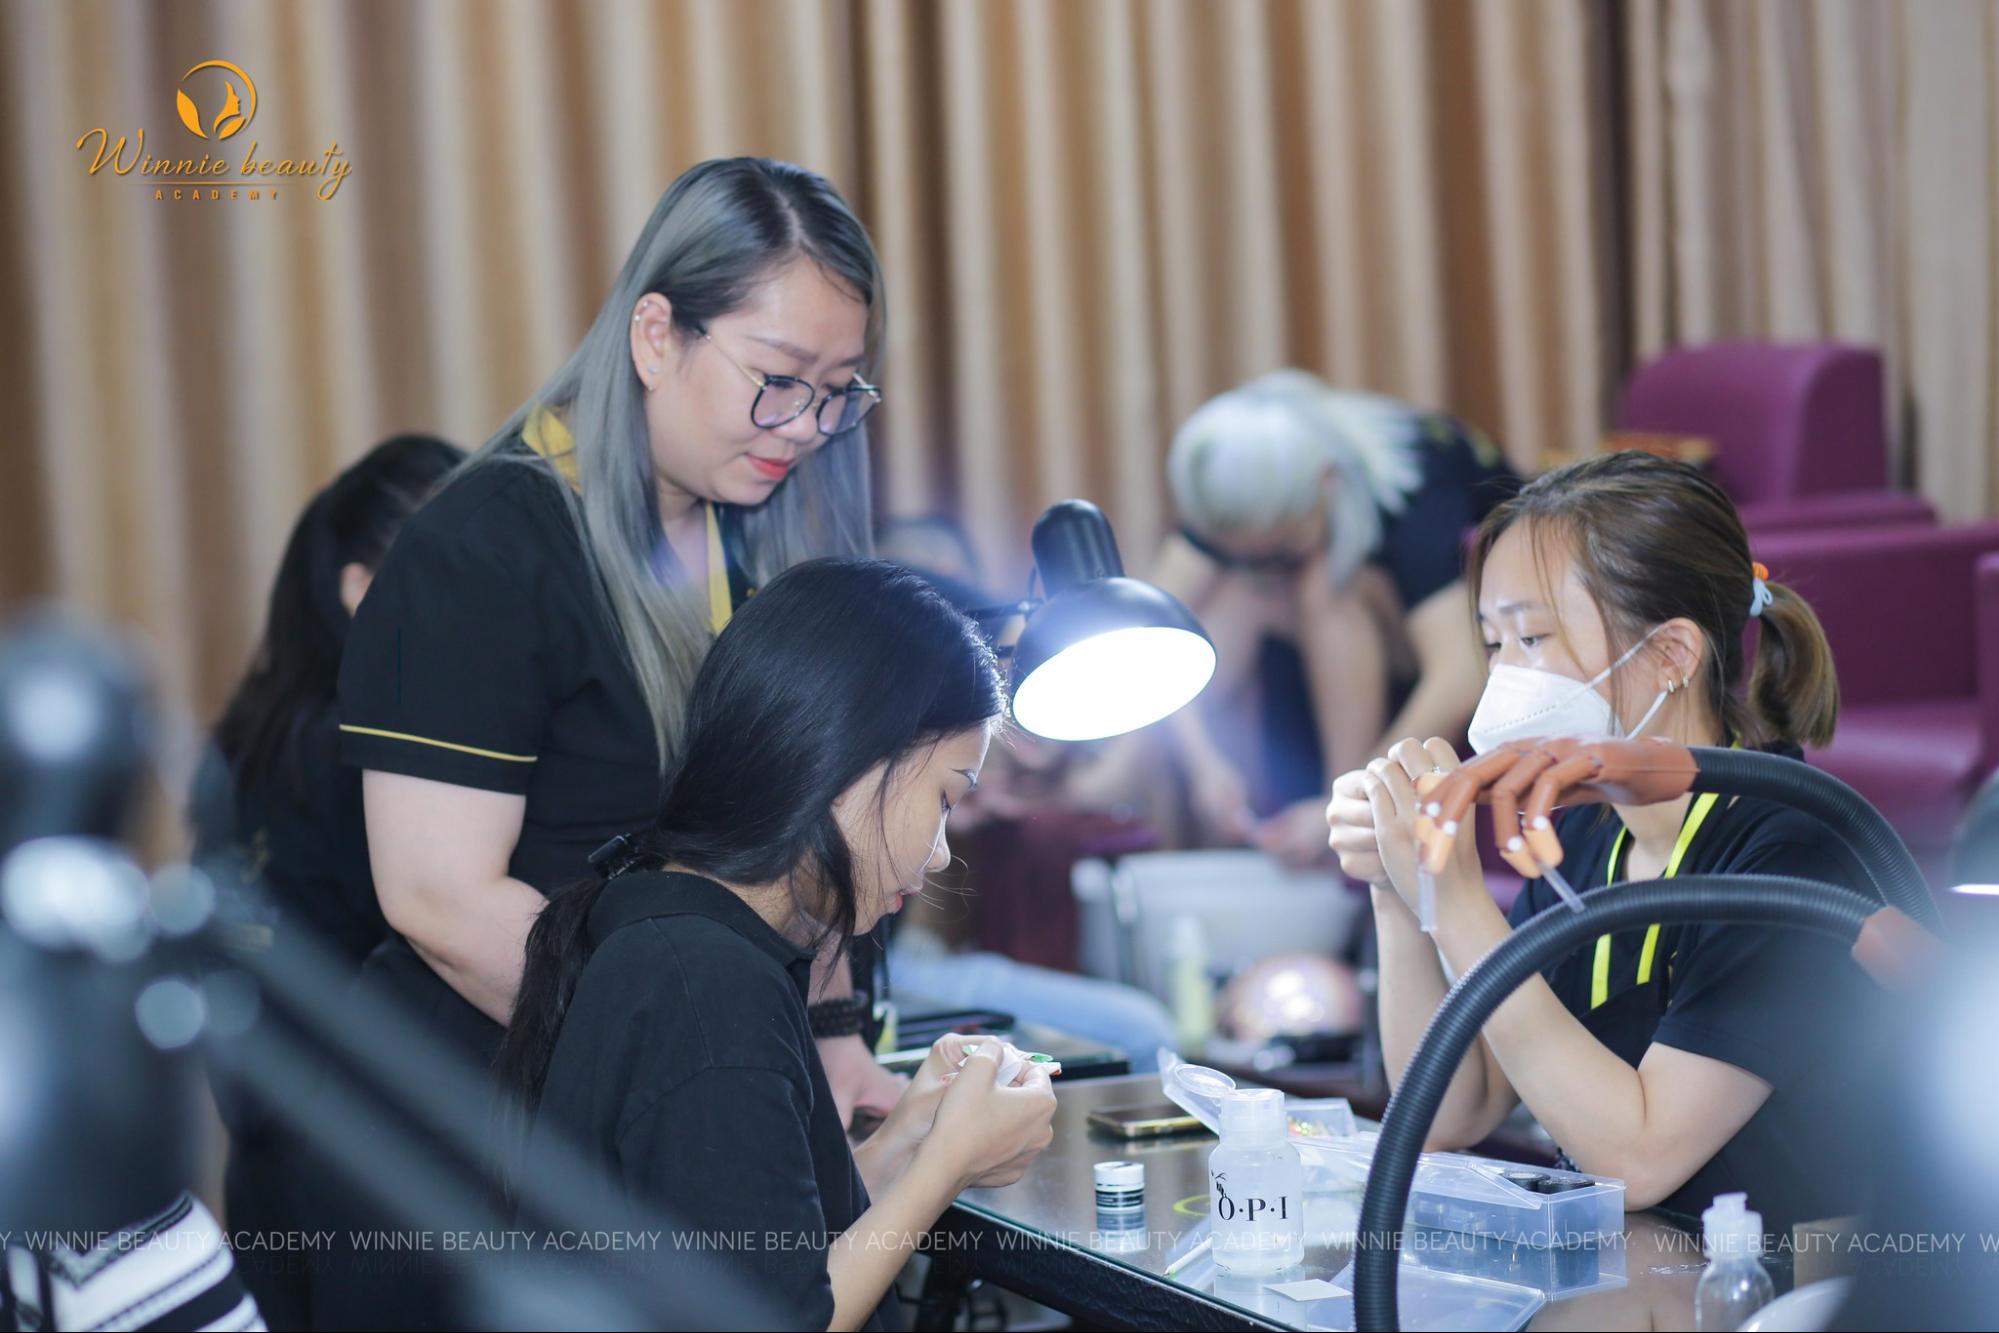 Winnie Beauty Academy với 10 năm hoạt động cung cấp khoá học uy tín tại Hà Nội